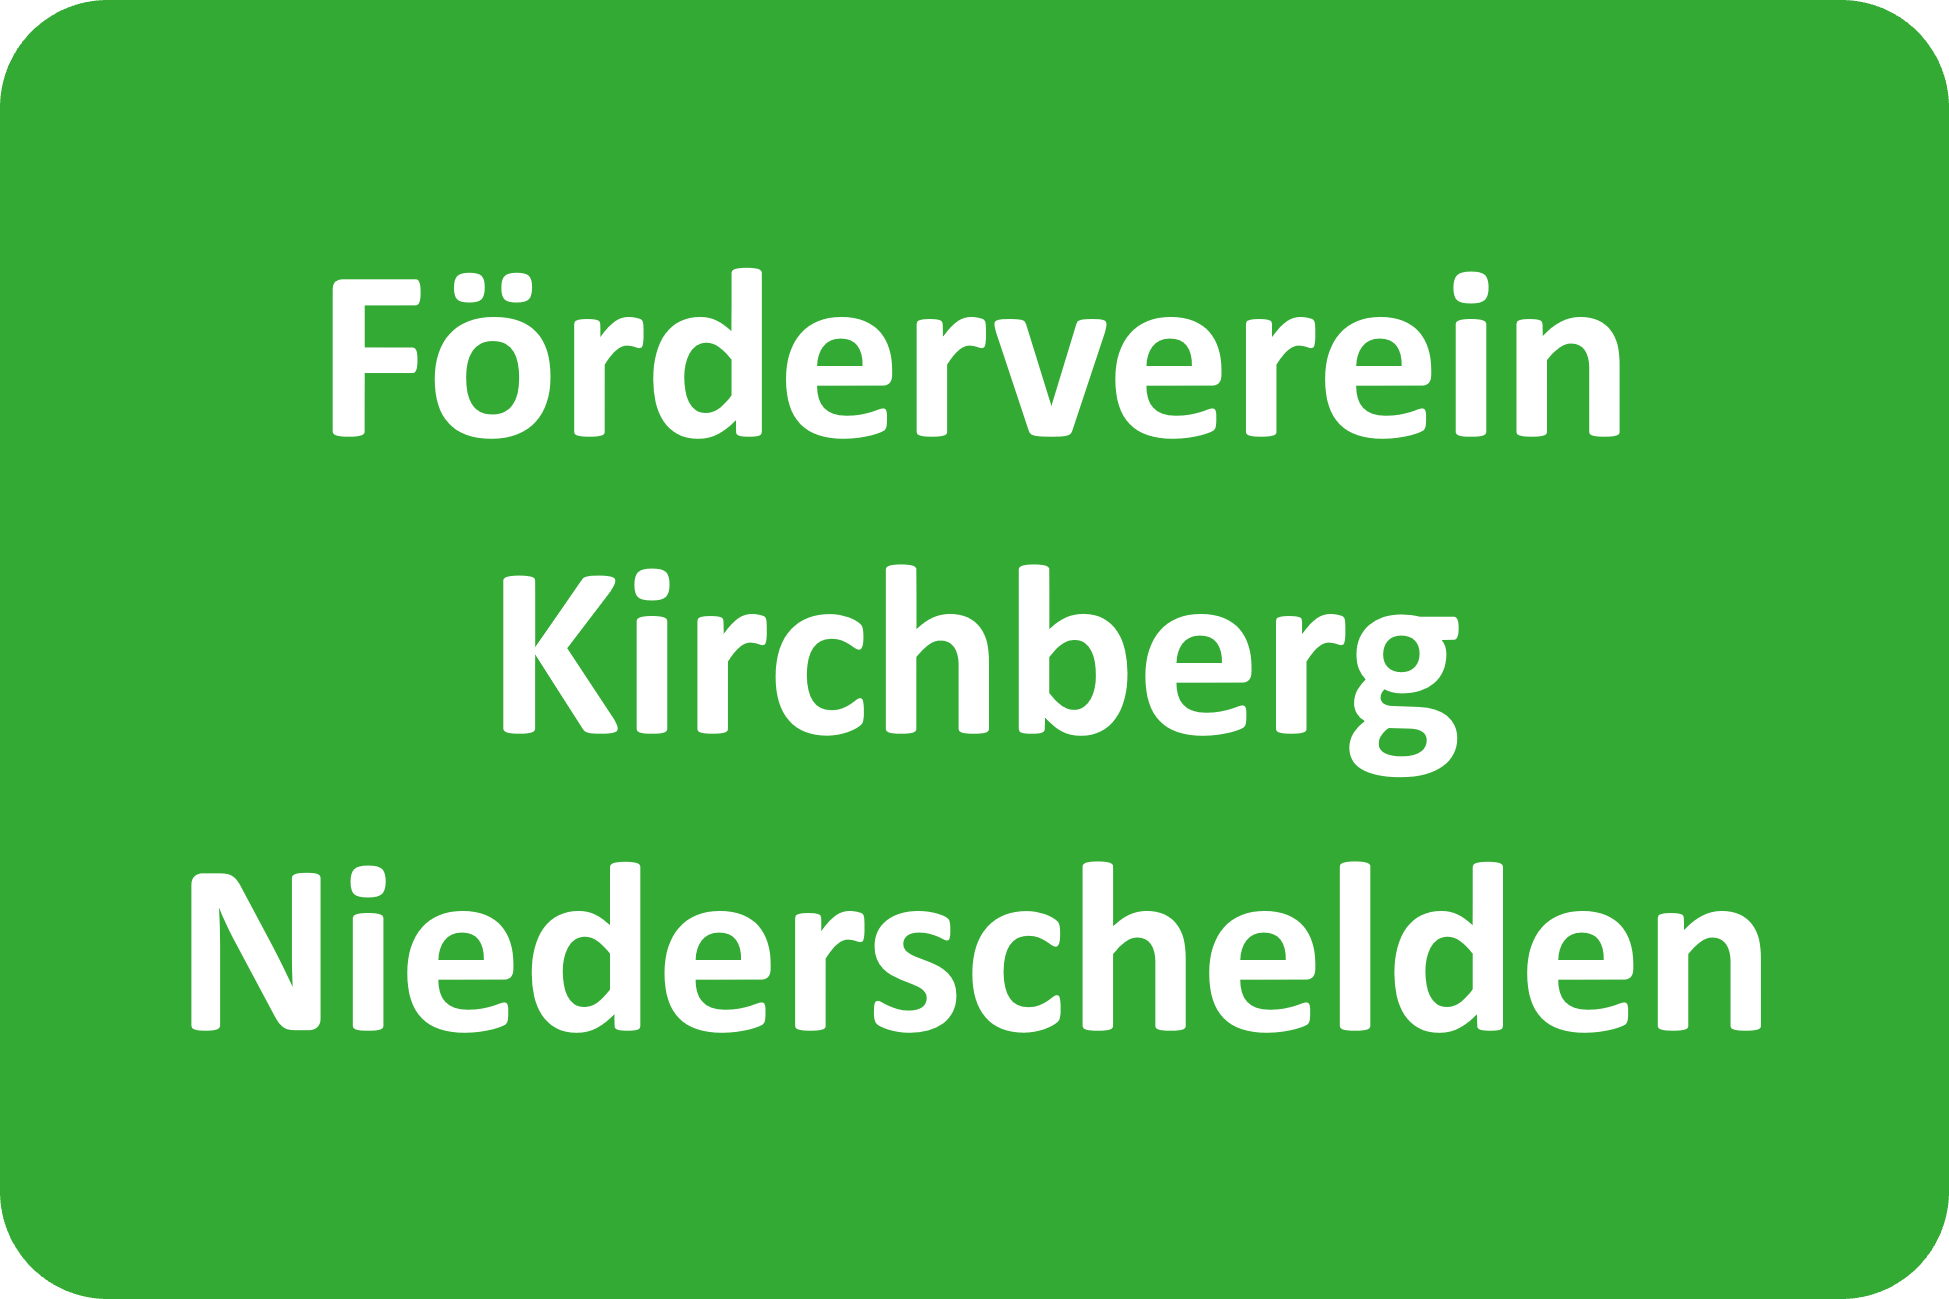 Förderverein Kirchberg Niederschelden